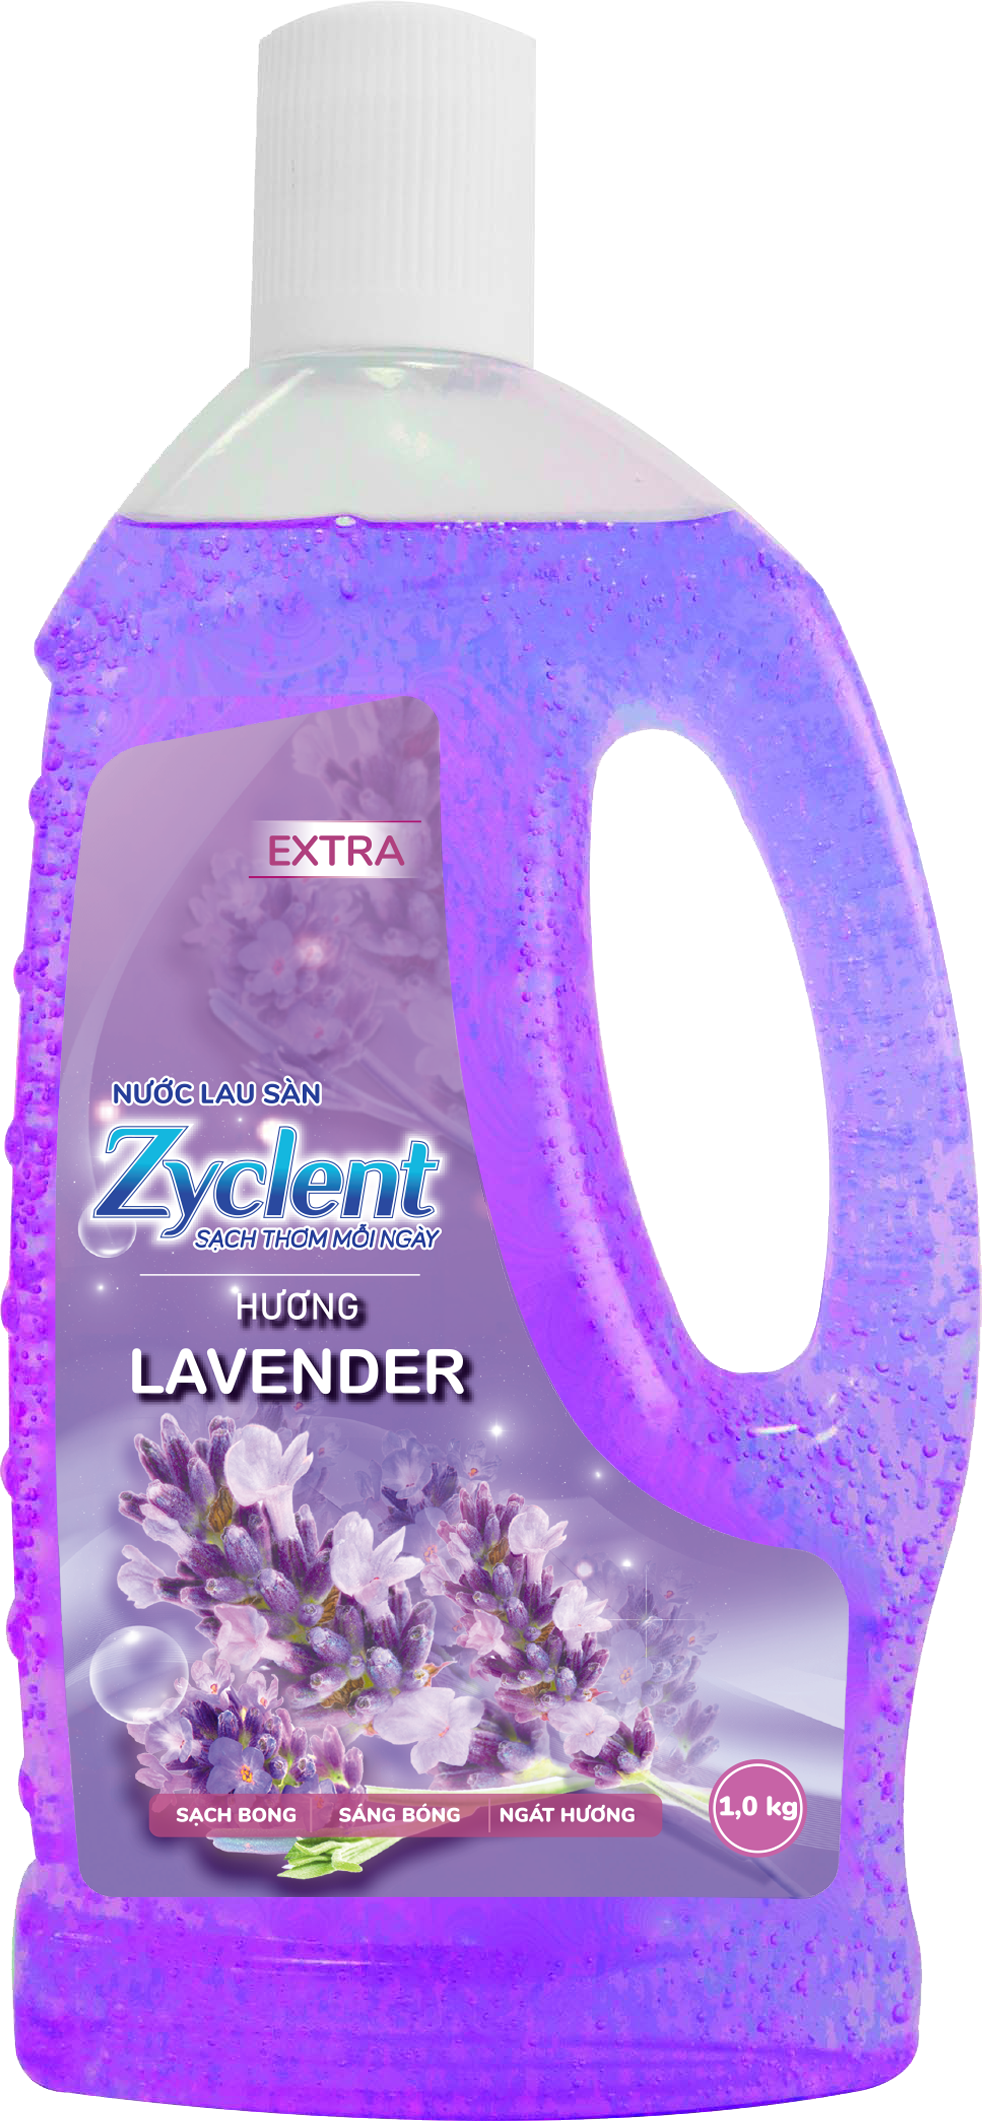 Thùng Nước Lau Sàn ZYCLENT EXTRA Hương Lavender - (1KG x 12 CHAI)